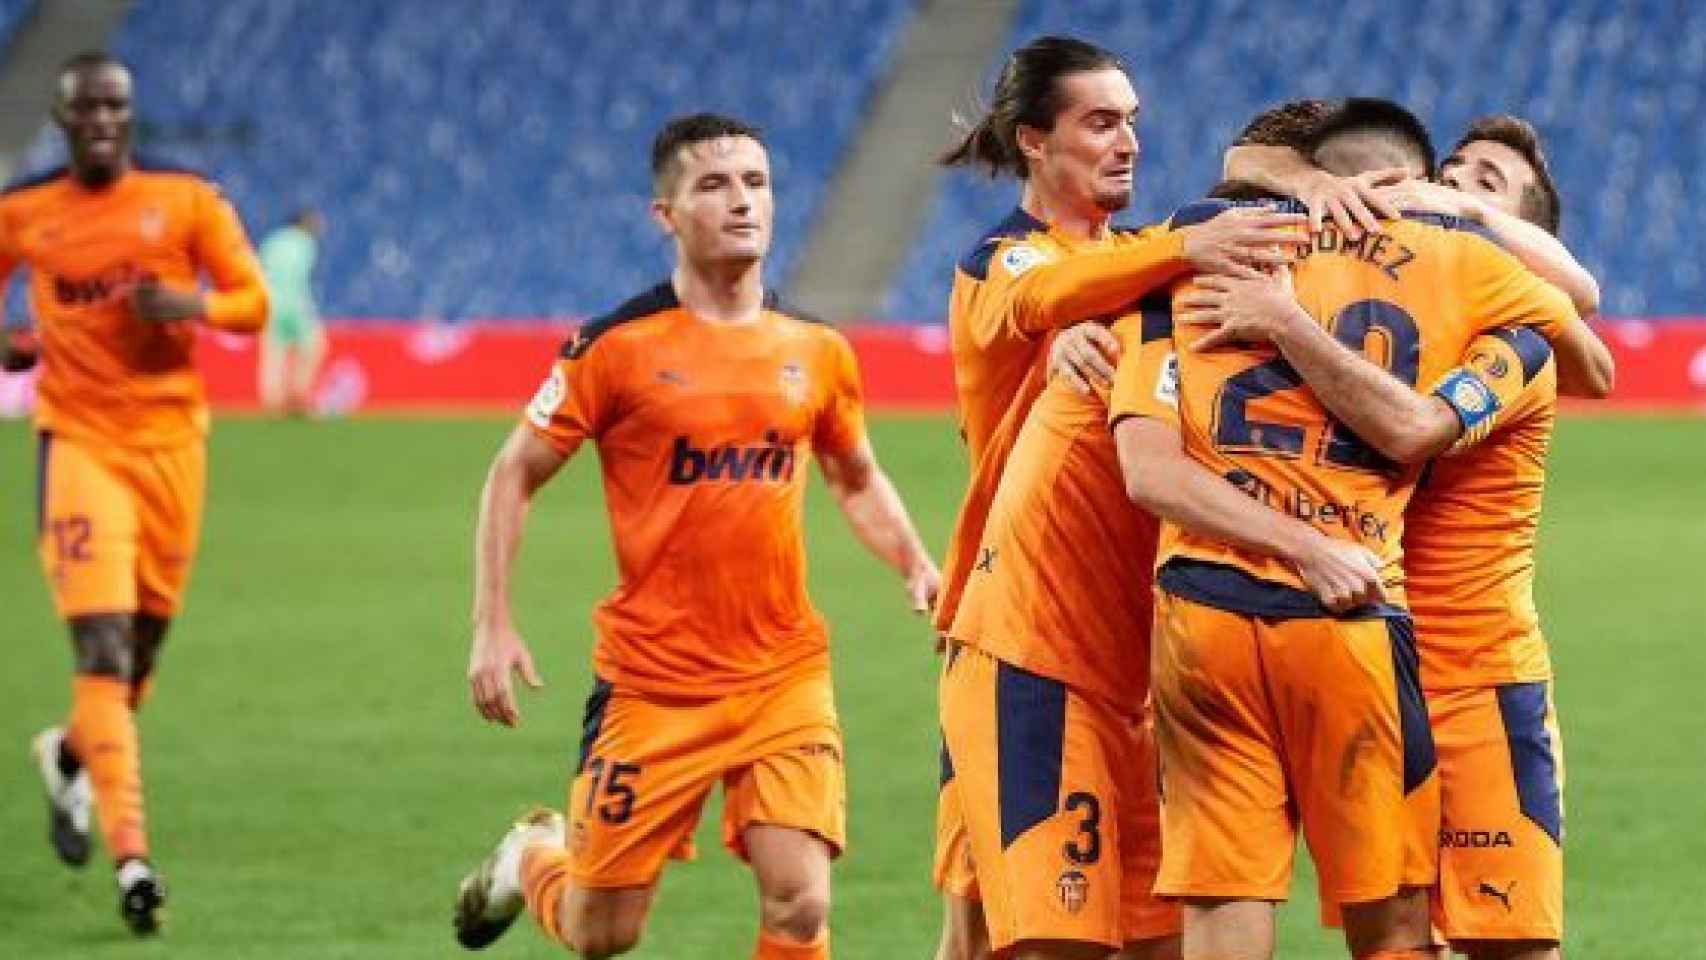 Piña de los jugadores del Valencia en La Liga 2020/2021